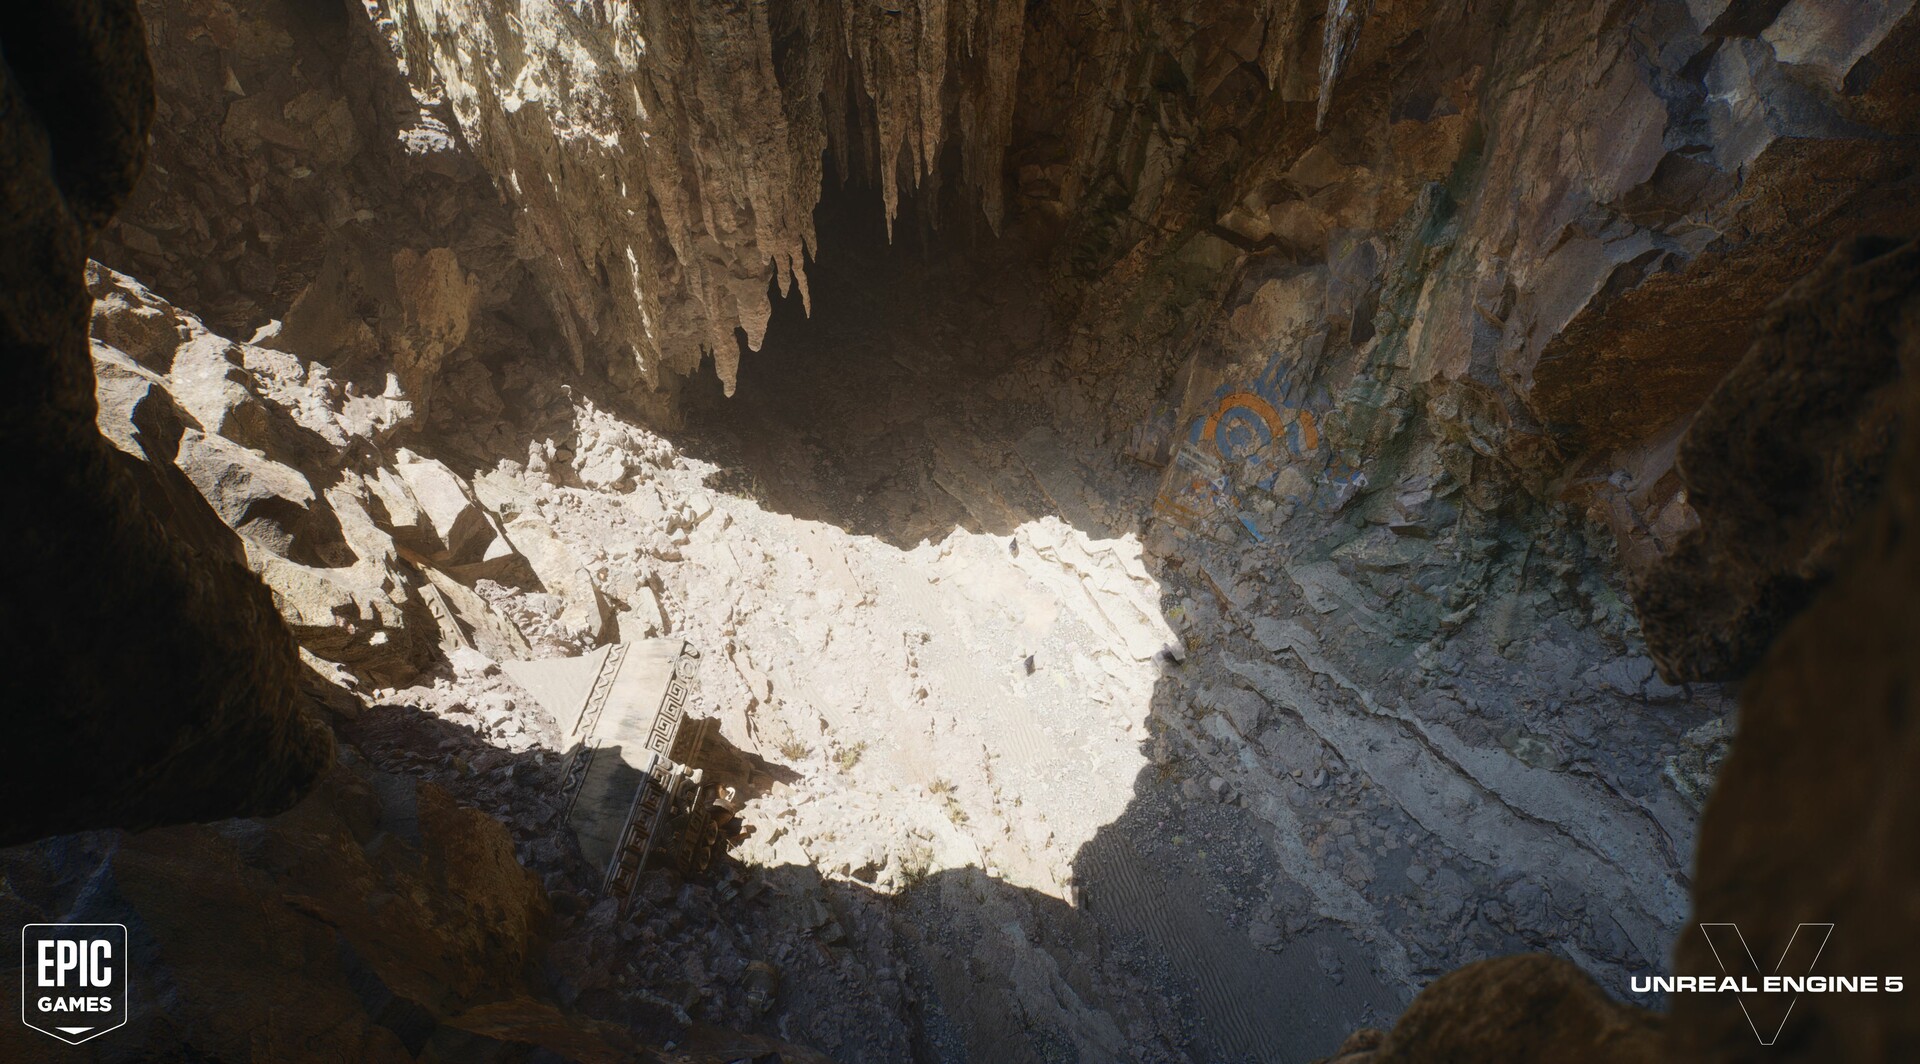 quentin-marmier-pov-high-cave-5-0001-1.jpg